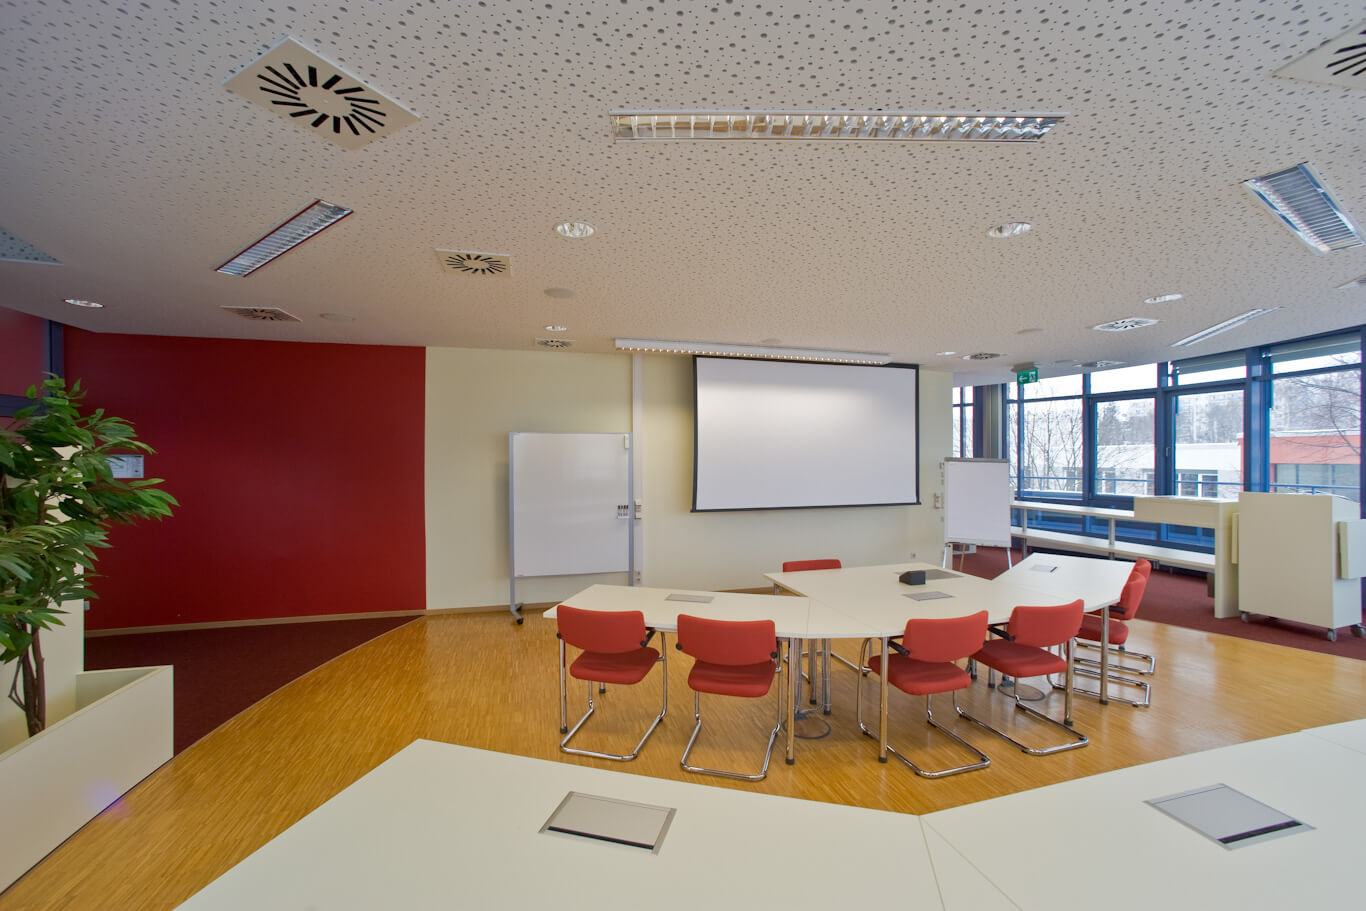 Blick in den offenen Seminar- und Schulungsraum des IHK Bildungszentrum